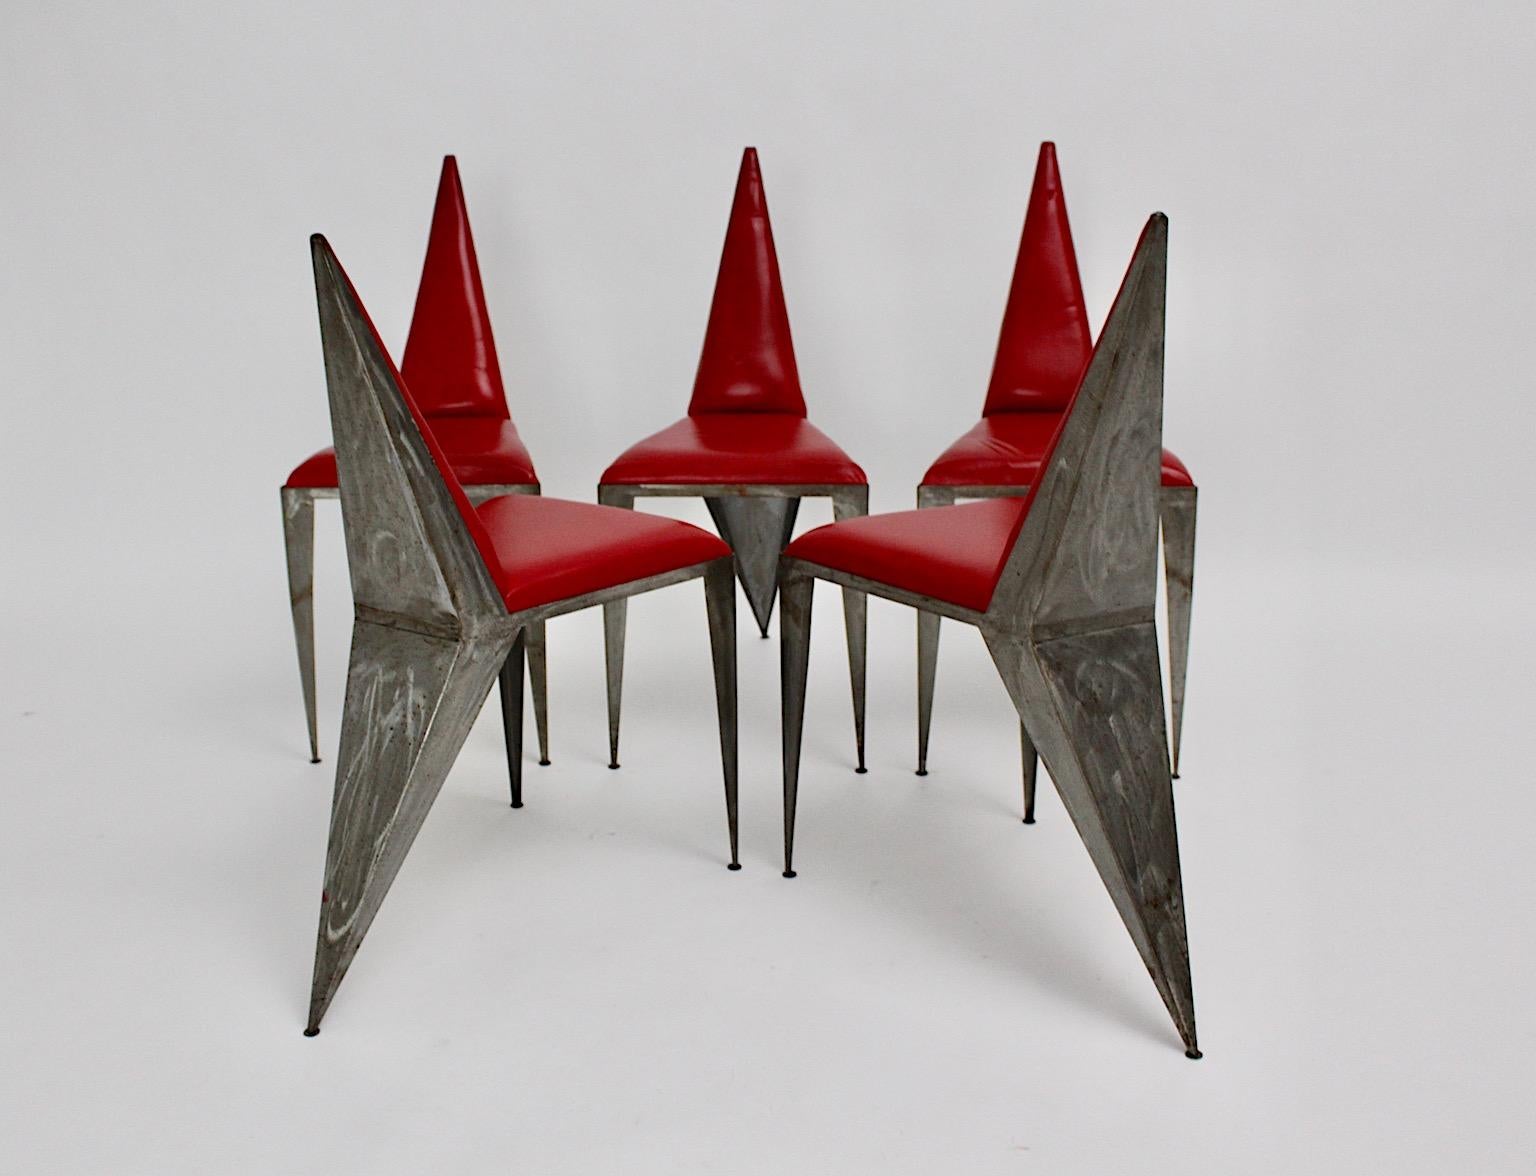 Un ensemble géométrique vintage en cuir rouge et fer de 5 chaises ou fauteuils de salle à manger, qui ont été conçus et exécutés en Autriche dans les années 1960.
Le cadre en fer brossé non traité, avec ses trois pieds et son siège arrière pointu,